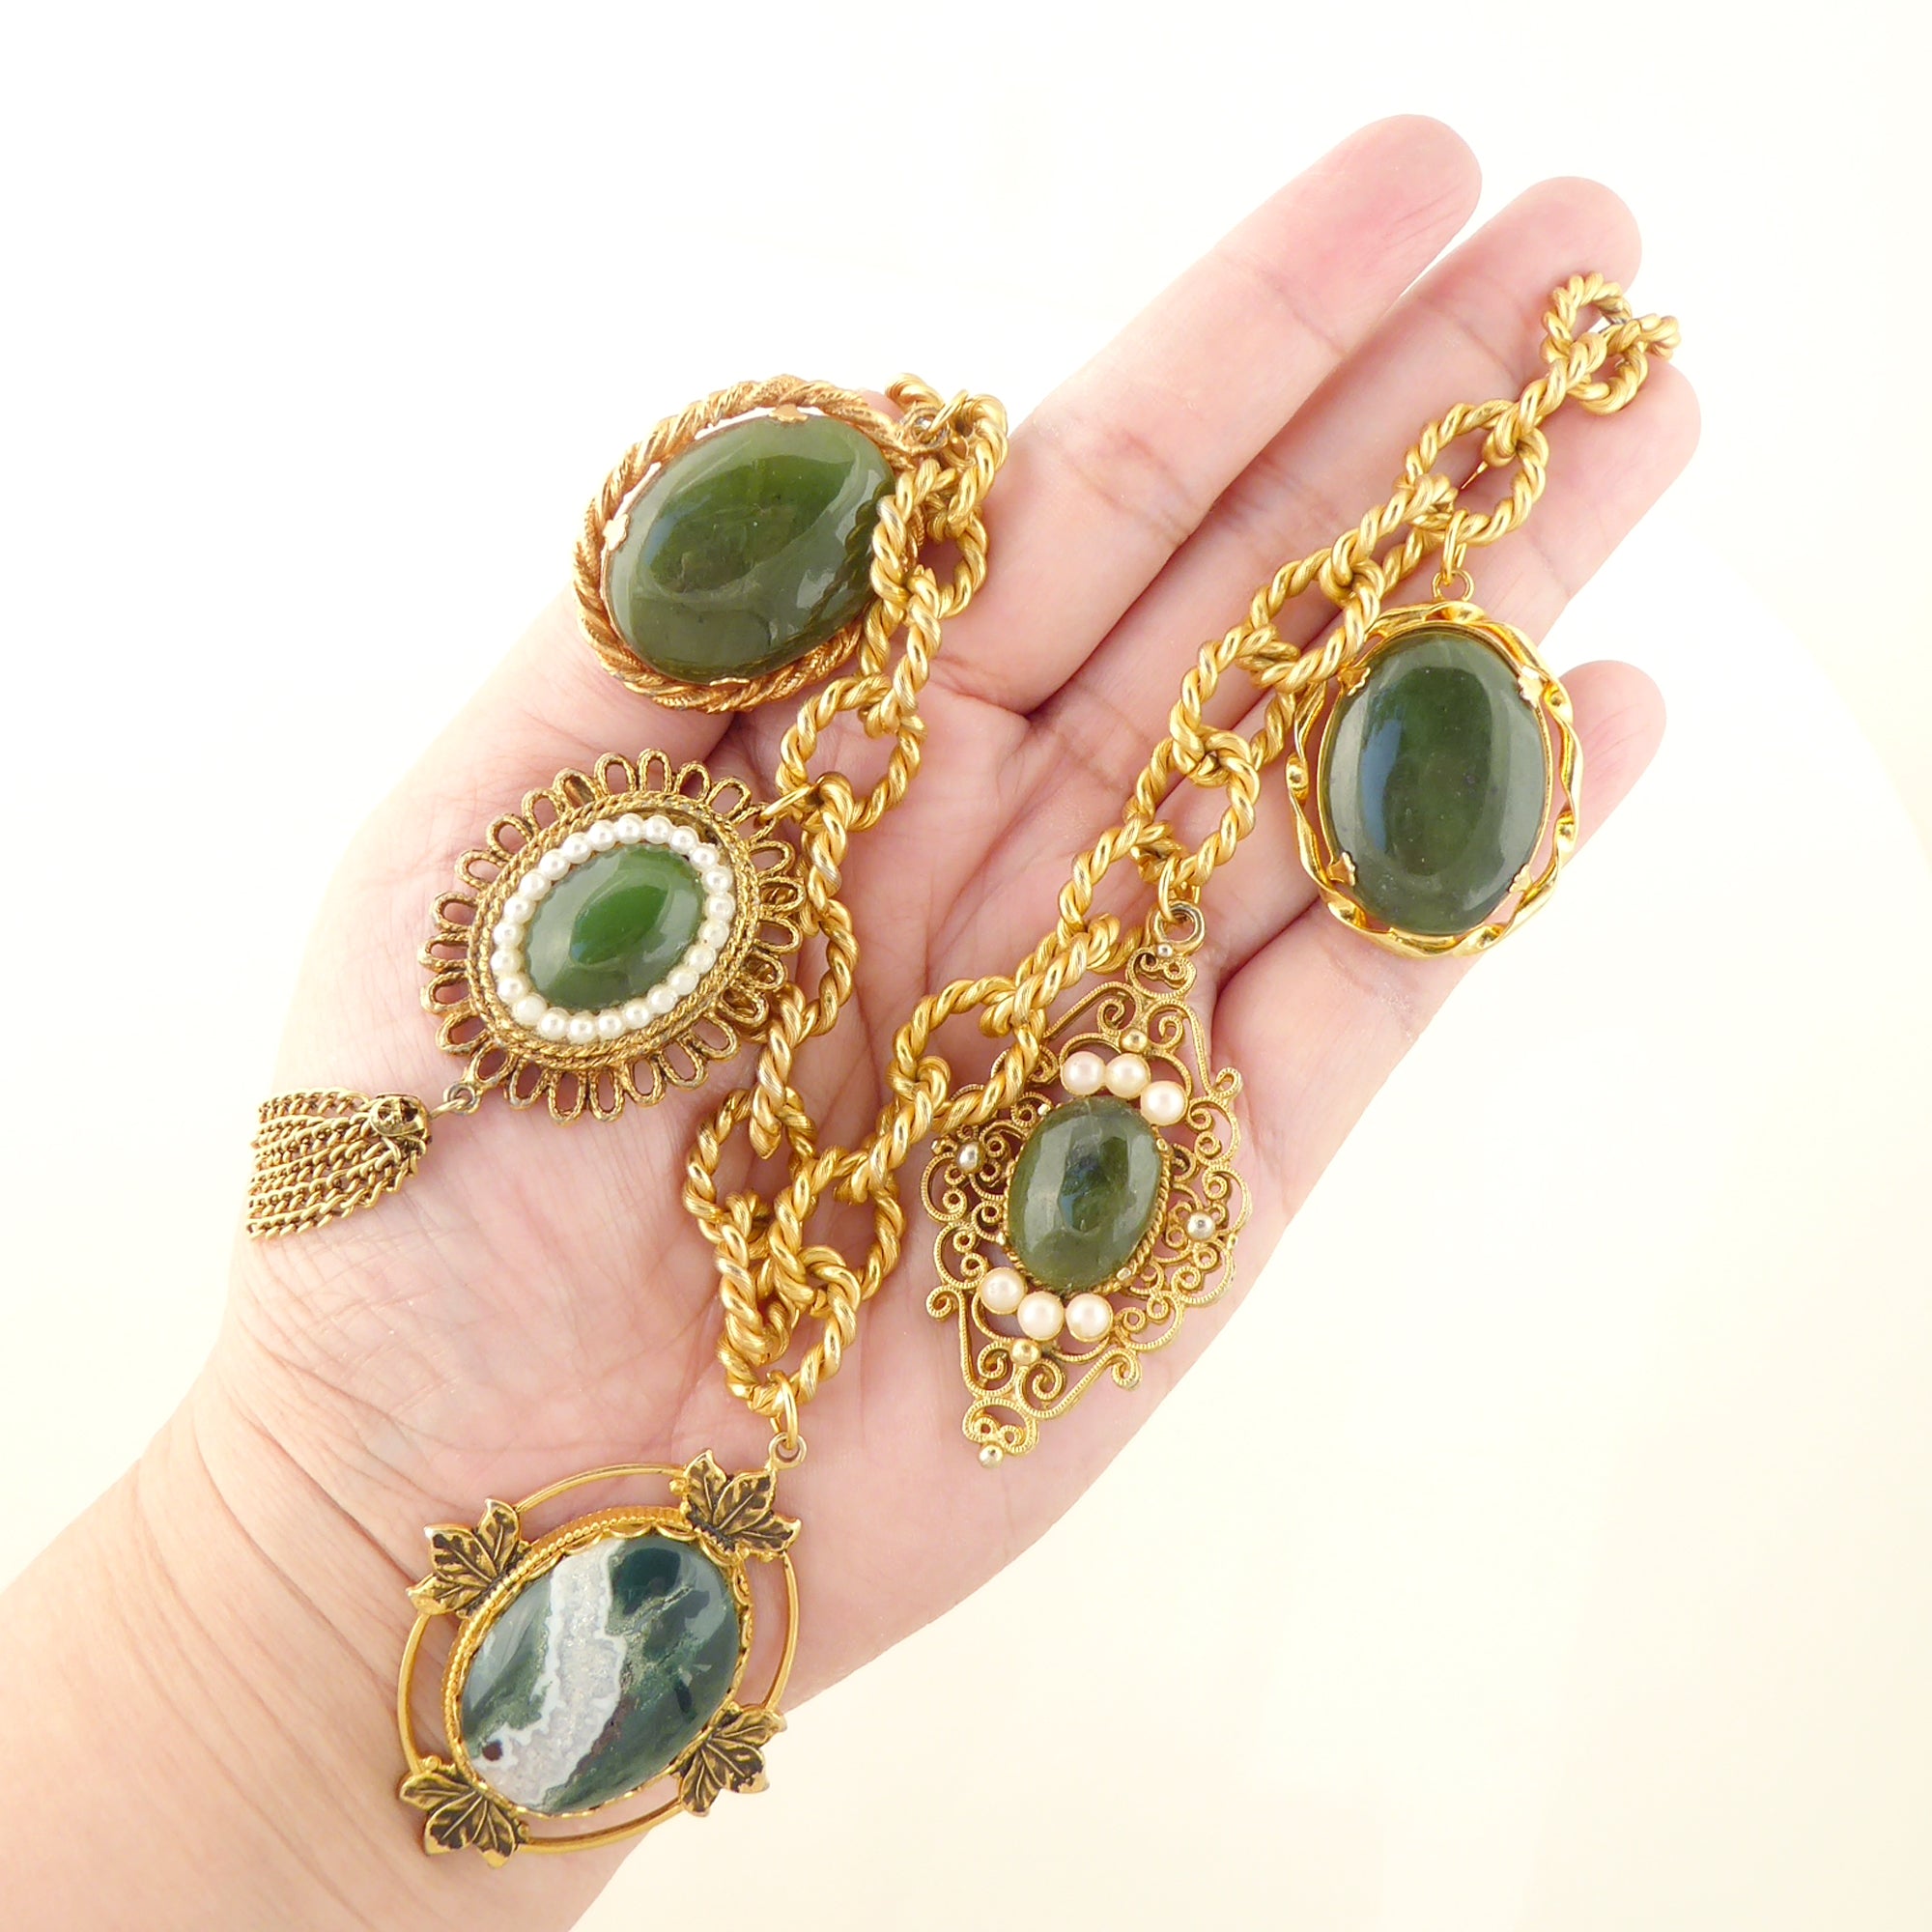 Green aventurine vintage necklace by Jenny Dayco 9